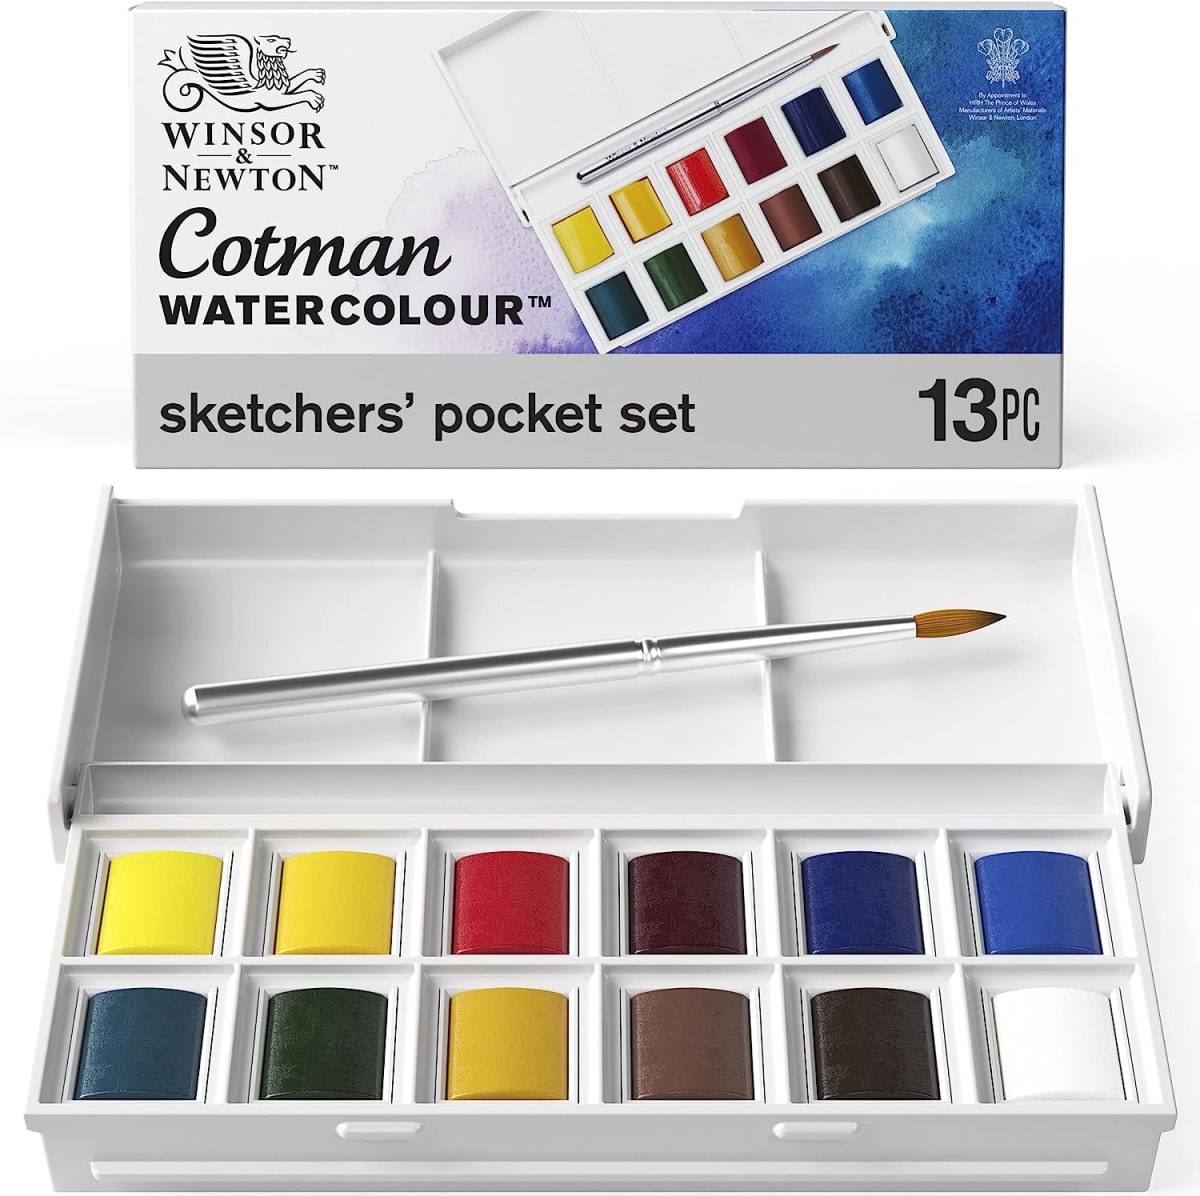 Cotman Water Colour Paint Sketchers' Pocket Box